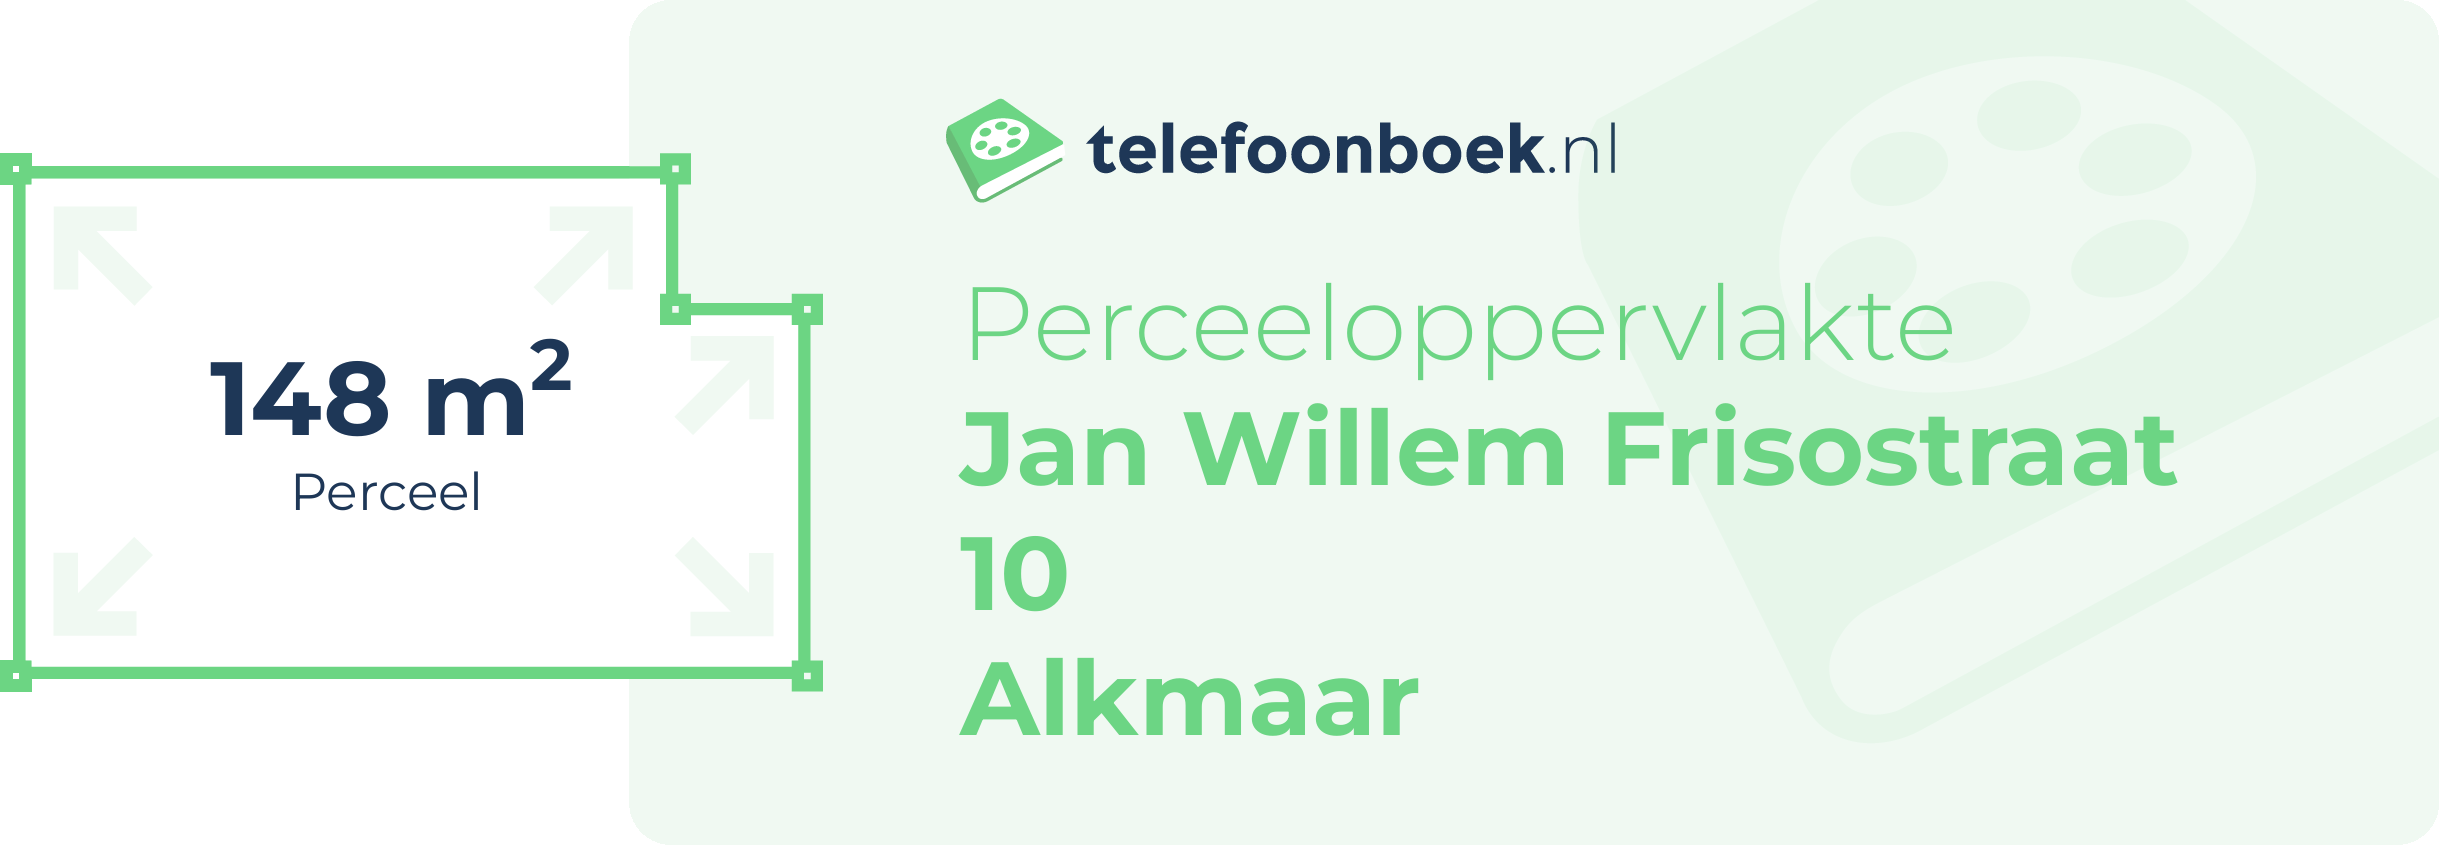 Perceeloppervlakte Jan Willem Frisostraat 10 Alkmaar